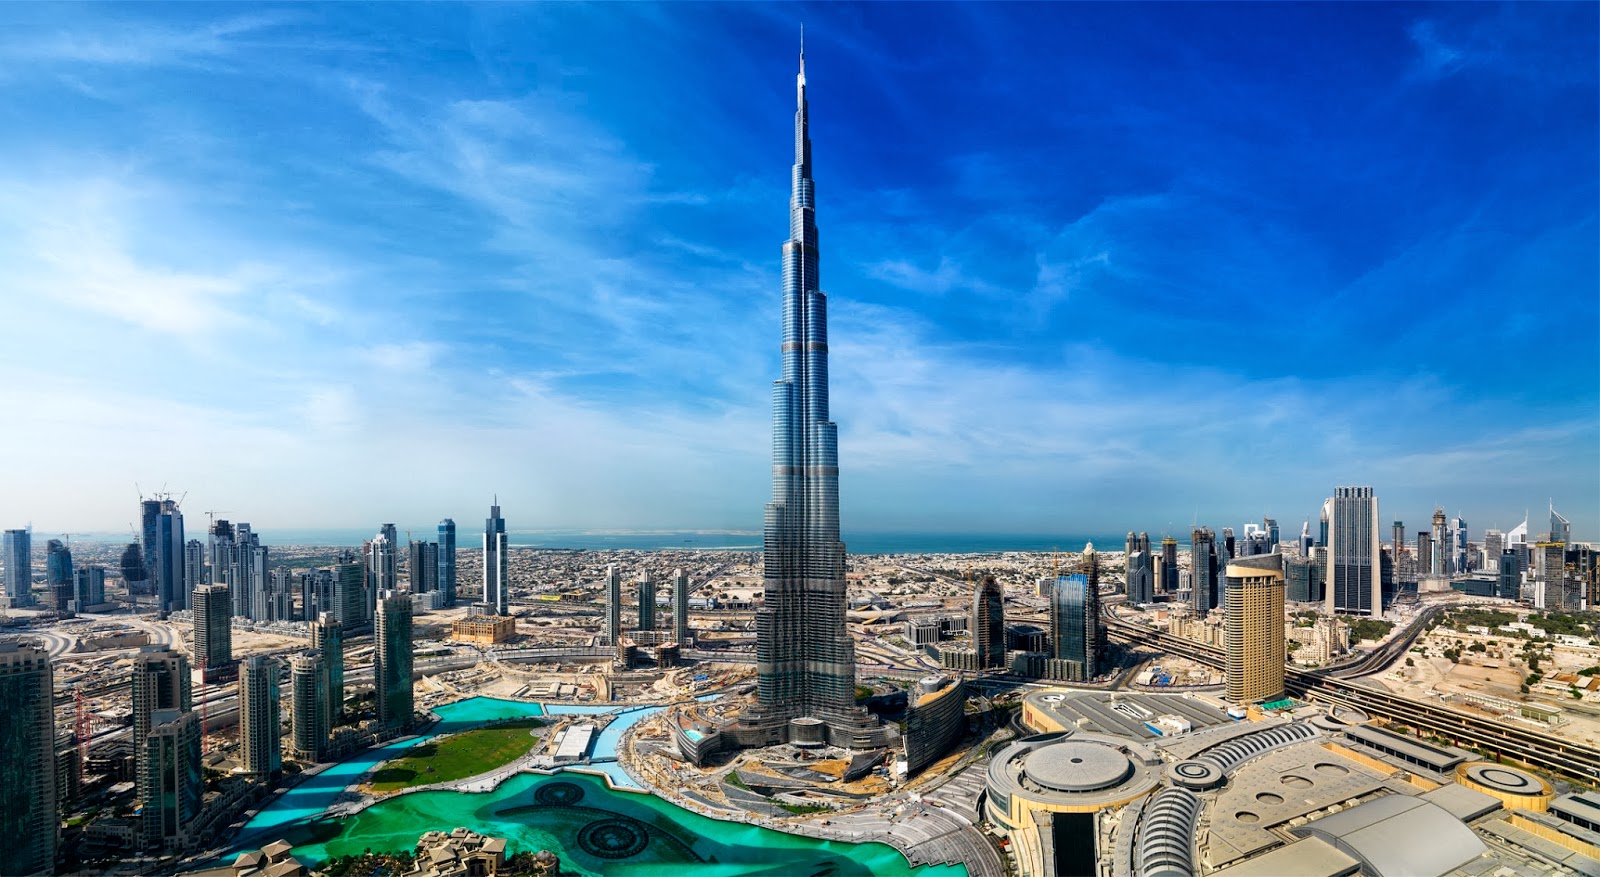 المزروعي: الإمارات تسعى لسعر غاز عادل للمنتجين والمستهلكين